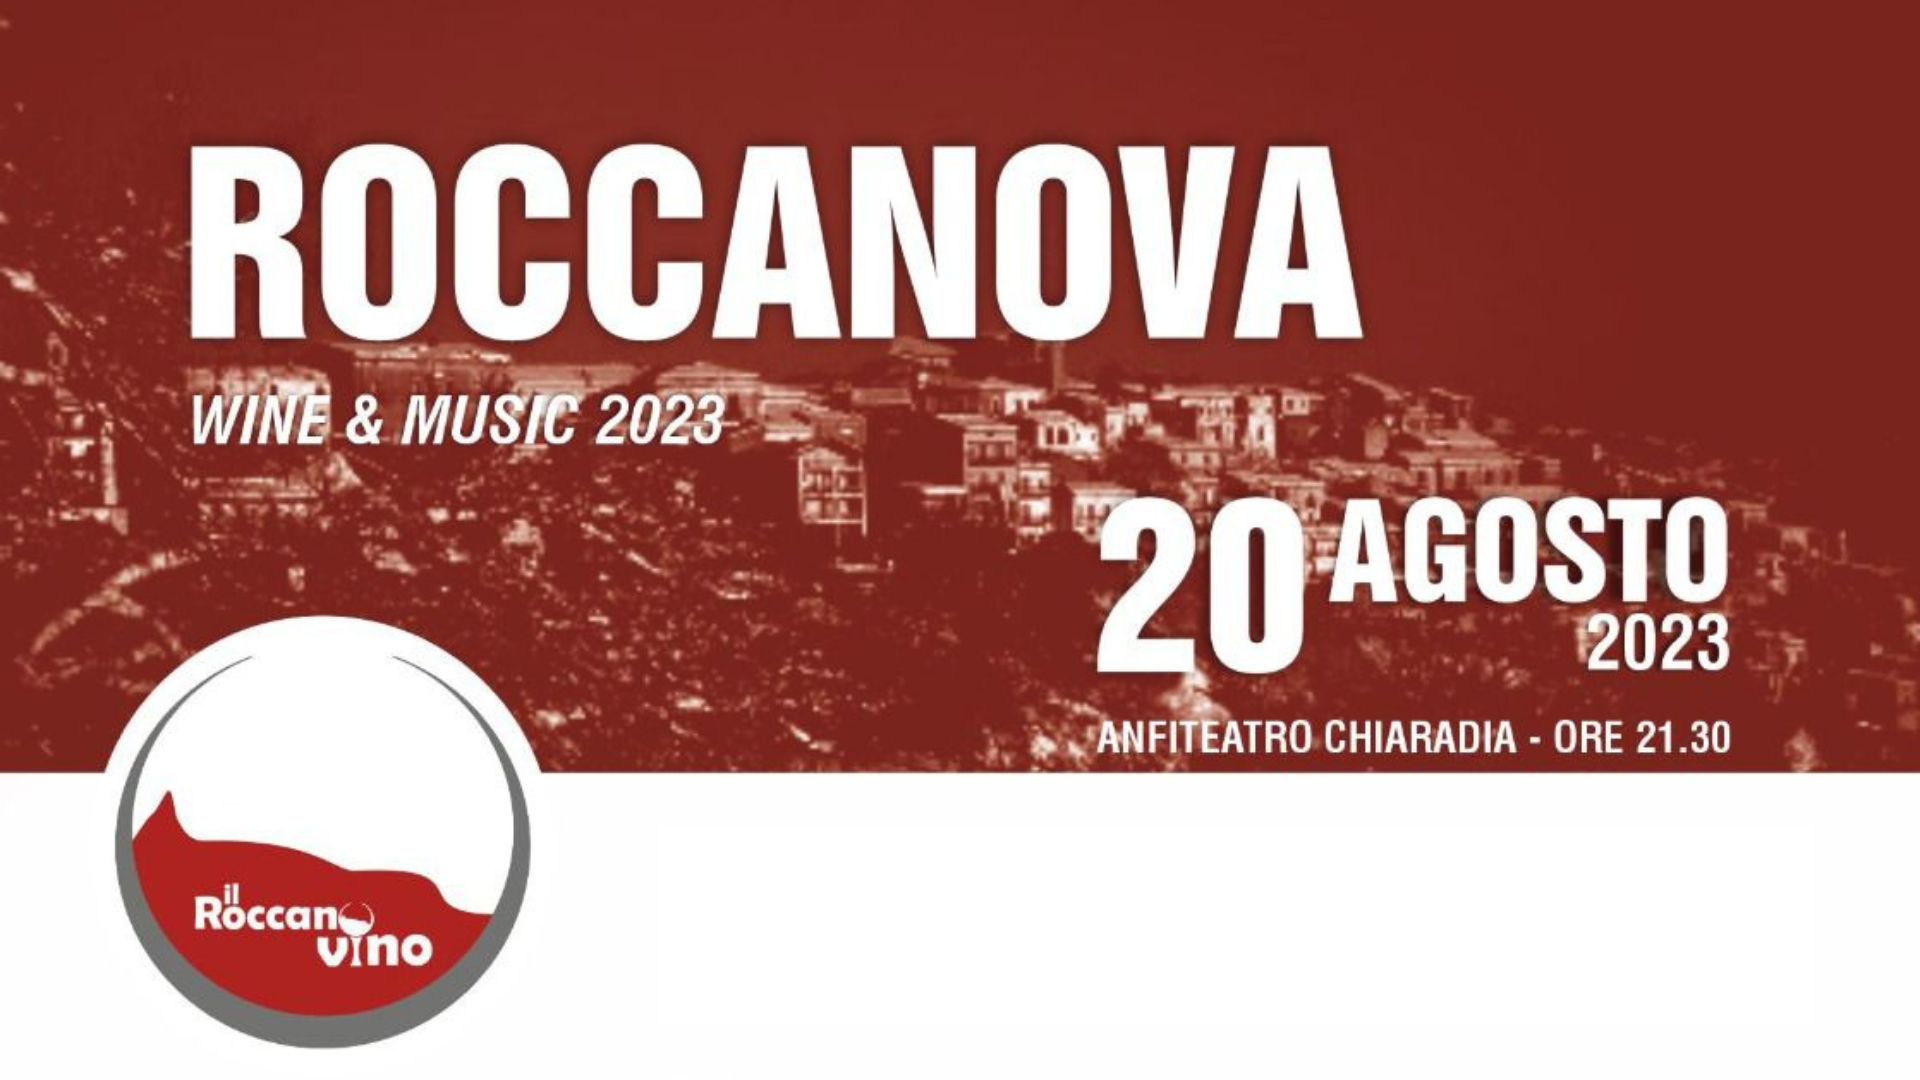 ROCCANOVA WINE & MUSIC - 20 agosto